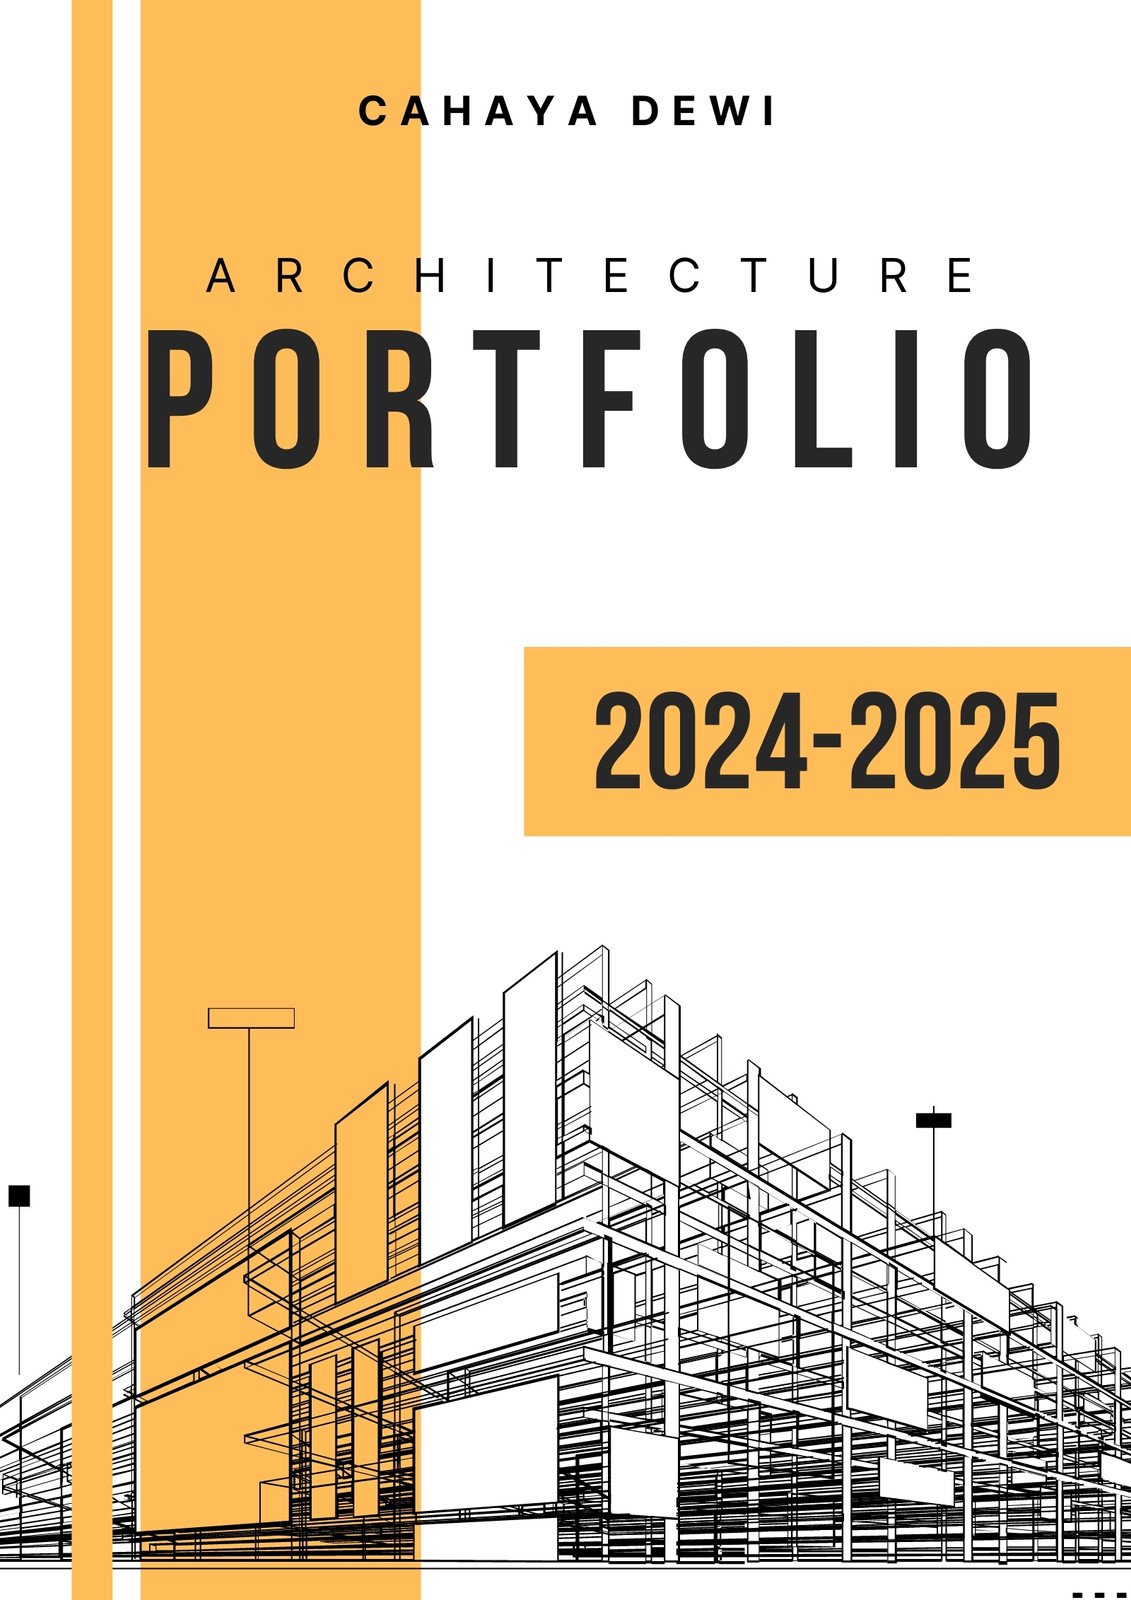 architectural portfolio cover page